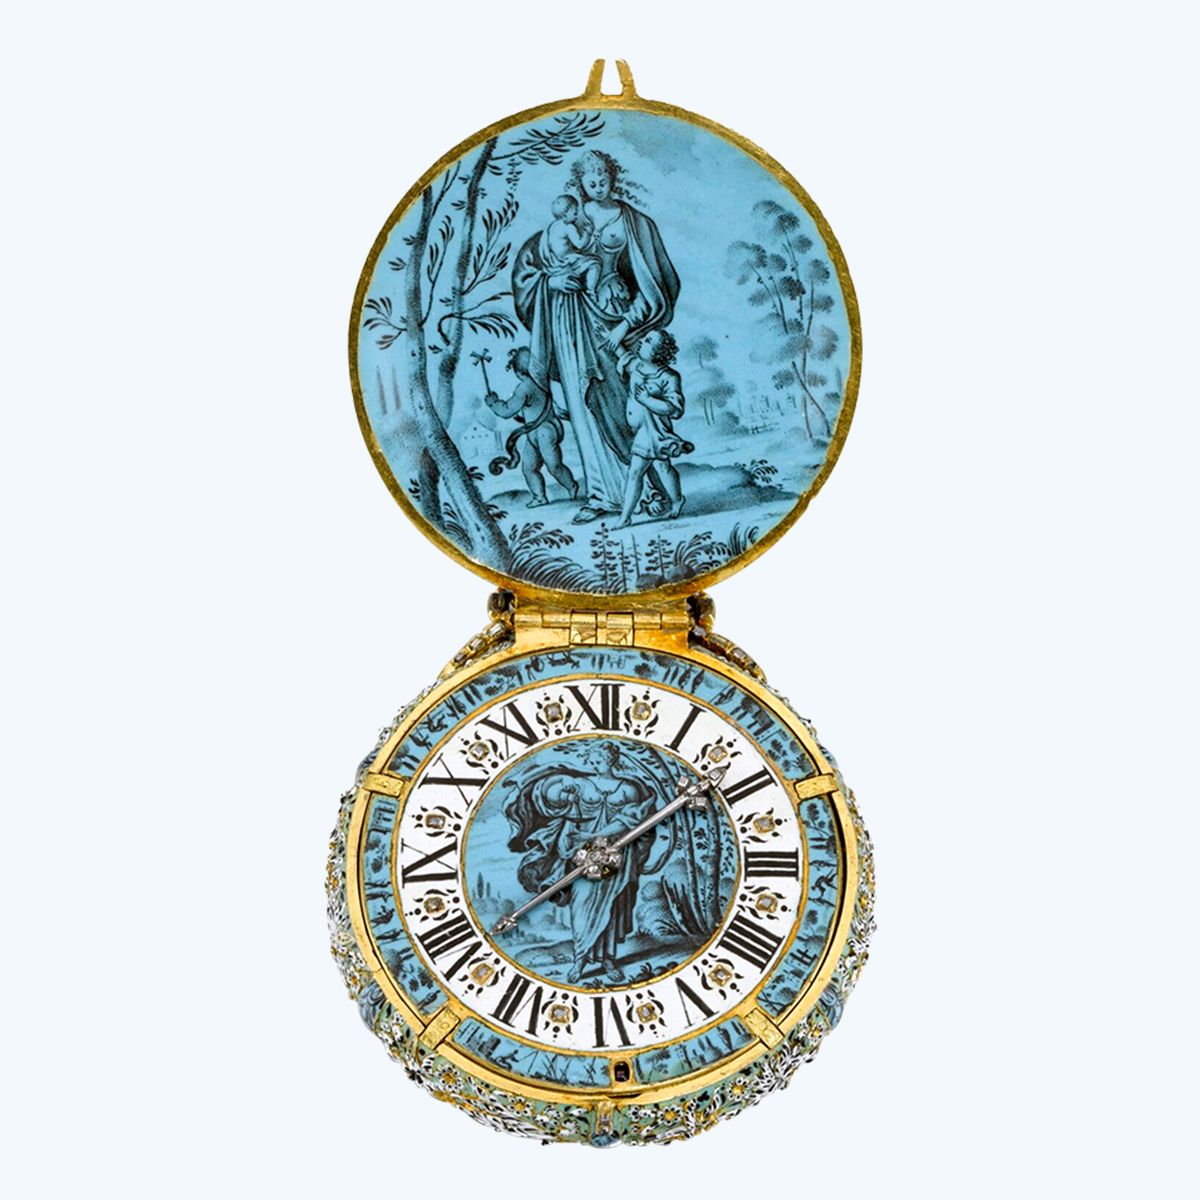 Часы «Умеренность, Милосердие и Надежда» (Temperance, Charity and Hope) с подвеской из золота, эмали и бриллиантов, Jehan Cremsdorff, Париж, около 1650 г.